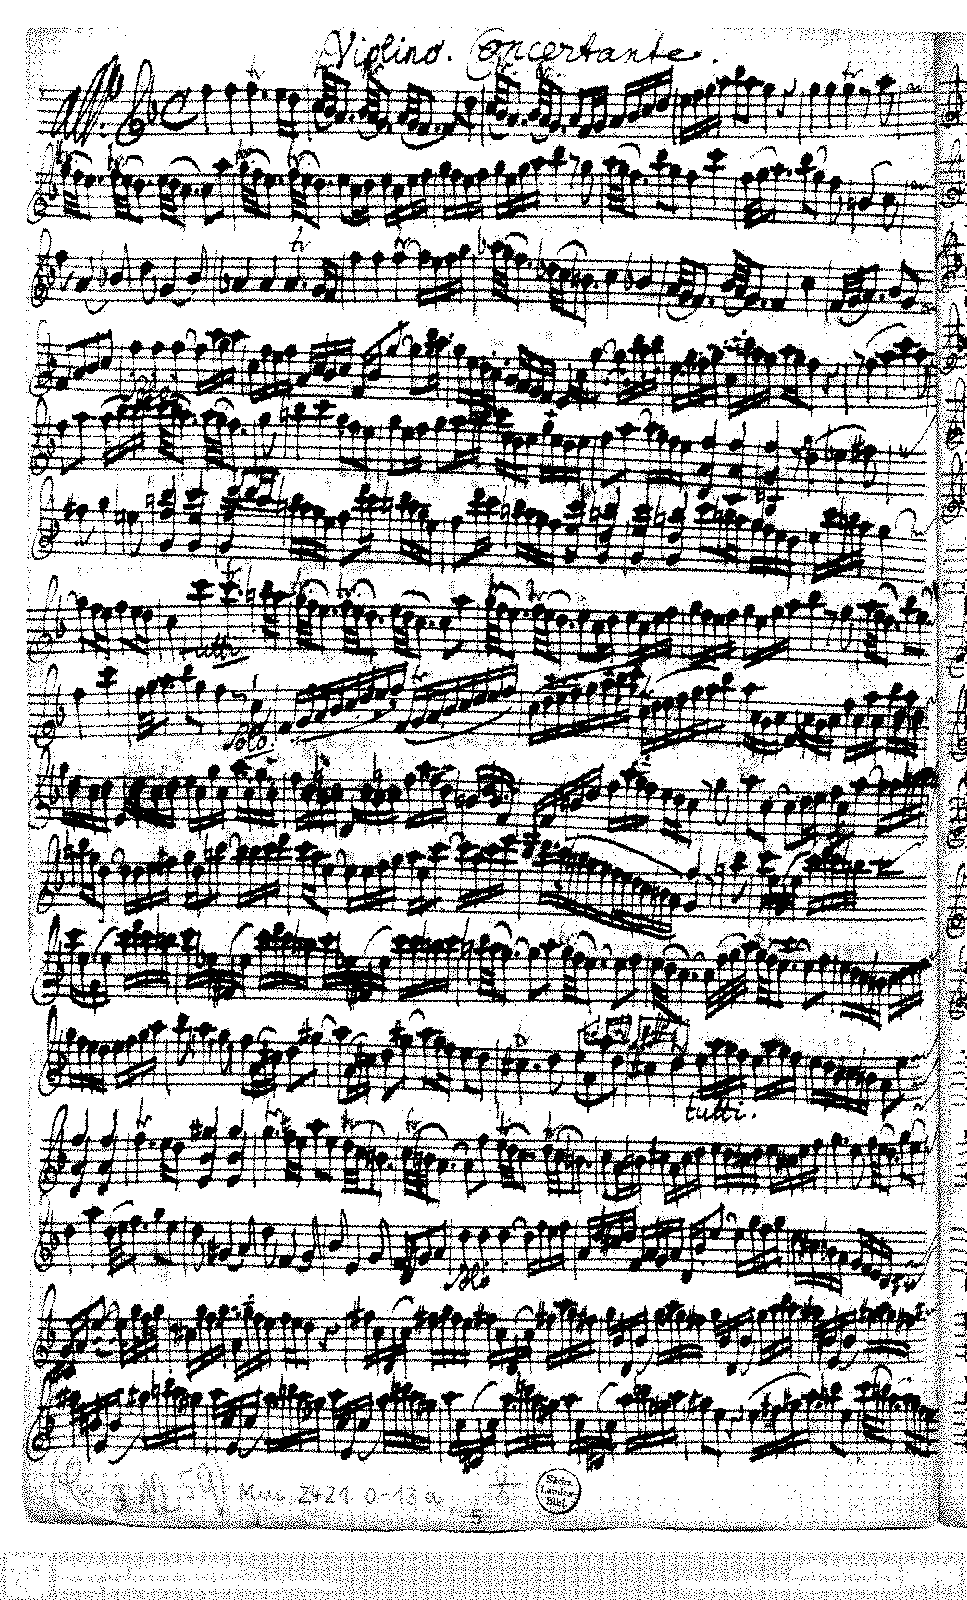 Violin Concerto in F major (Pisendel, Johann Georg) - IMSLP